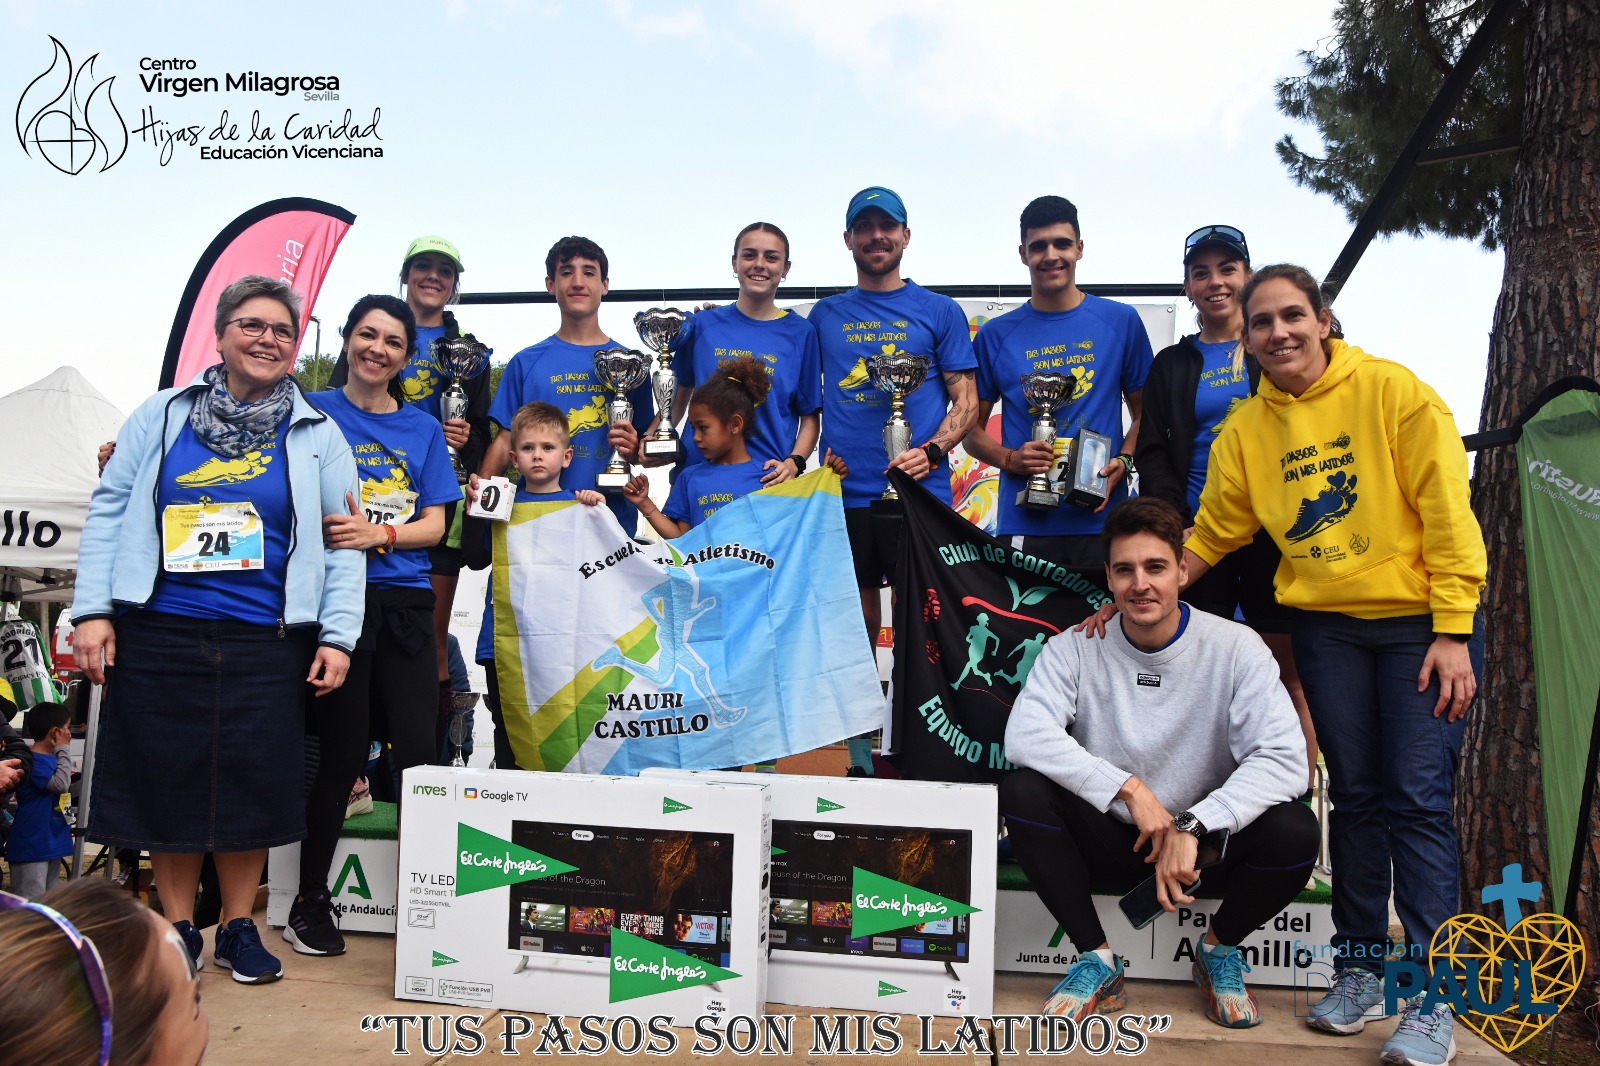 La I Carrera Solidaria “TUS PASOS SON MIS LATIDOS” reúne a 700 corredores en beneficio de la Fundación DEPAUL